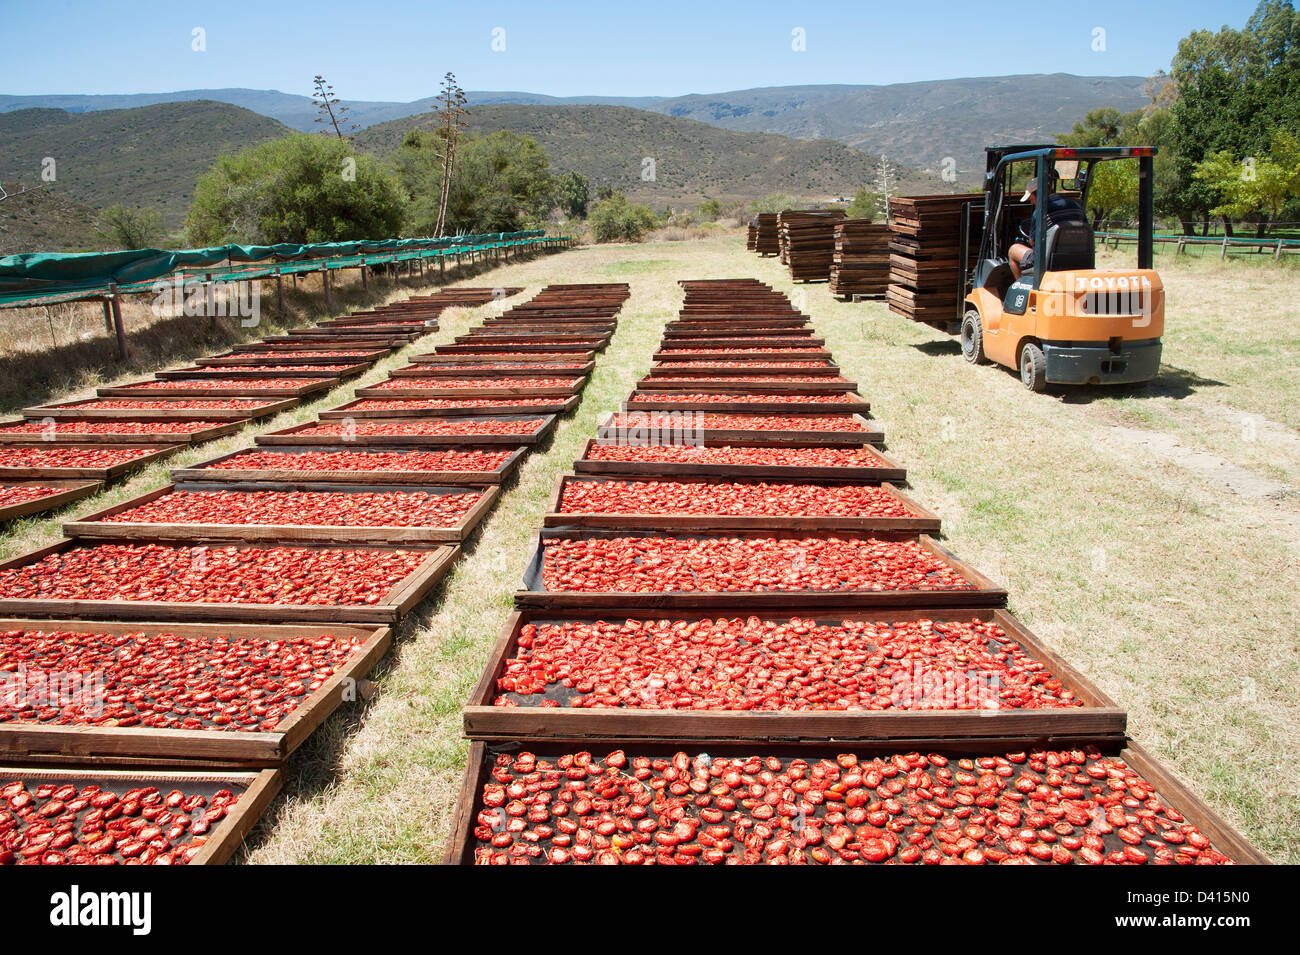 Tomaten Trocknen auf Gestellen in der Sonne auf einer Montagu-Farm in Südafrika Western Cape Stockfoto